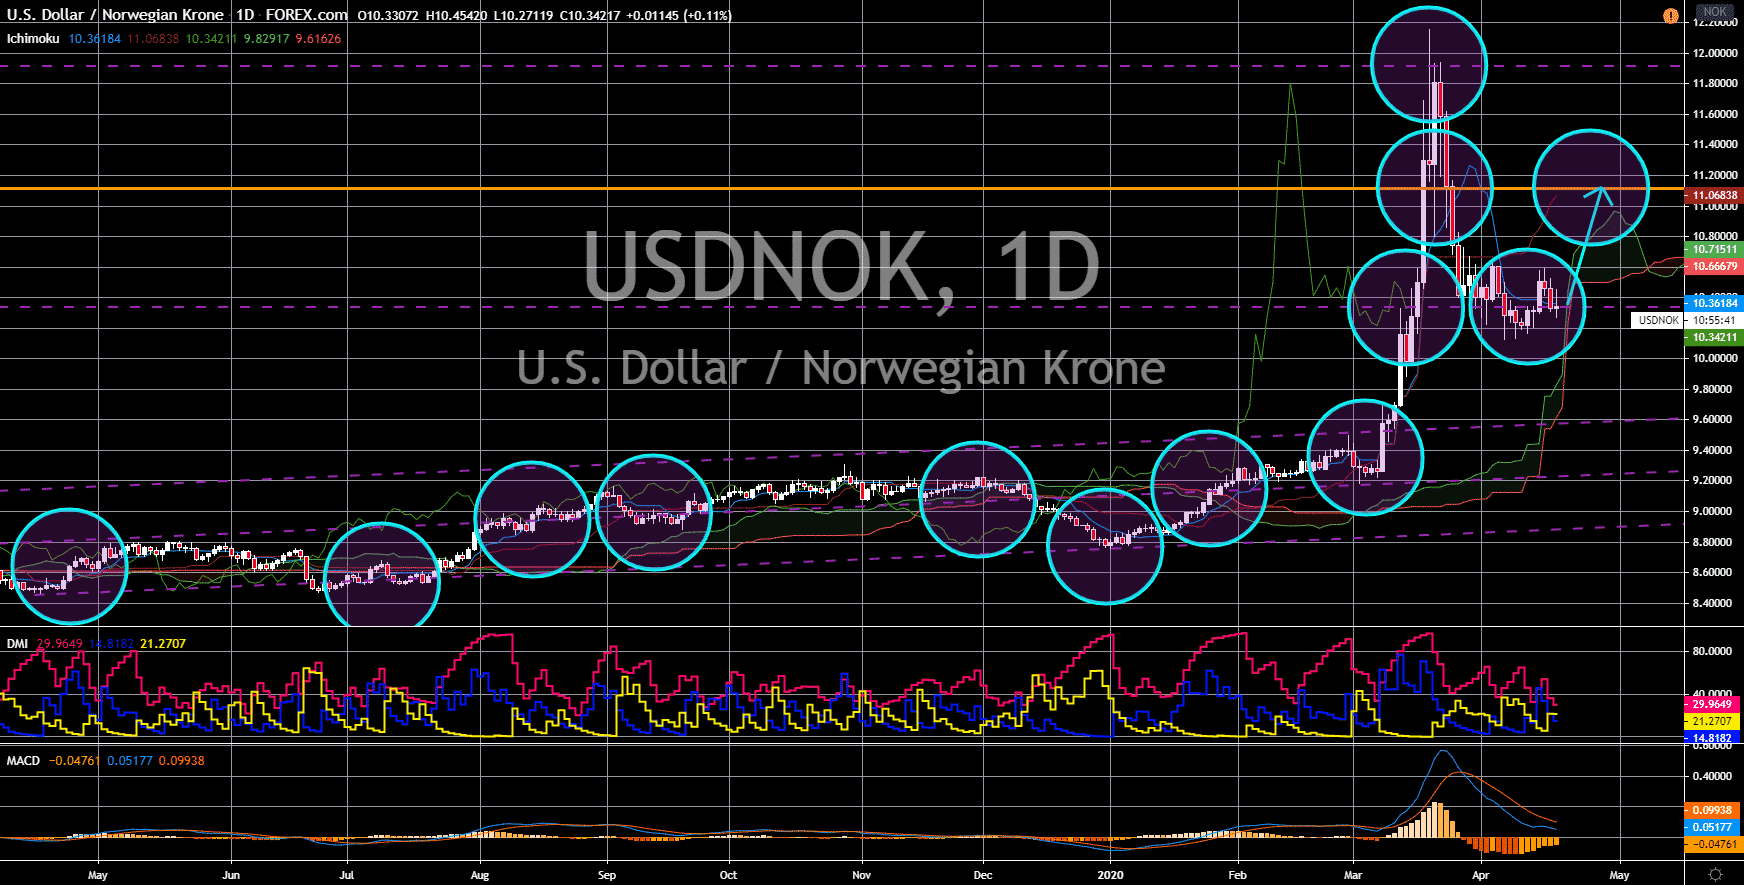 FinanceBrokerage - Noticias del mercado: Gráfico USD / NOK